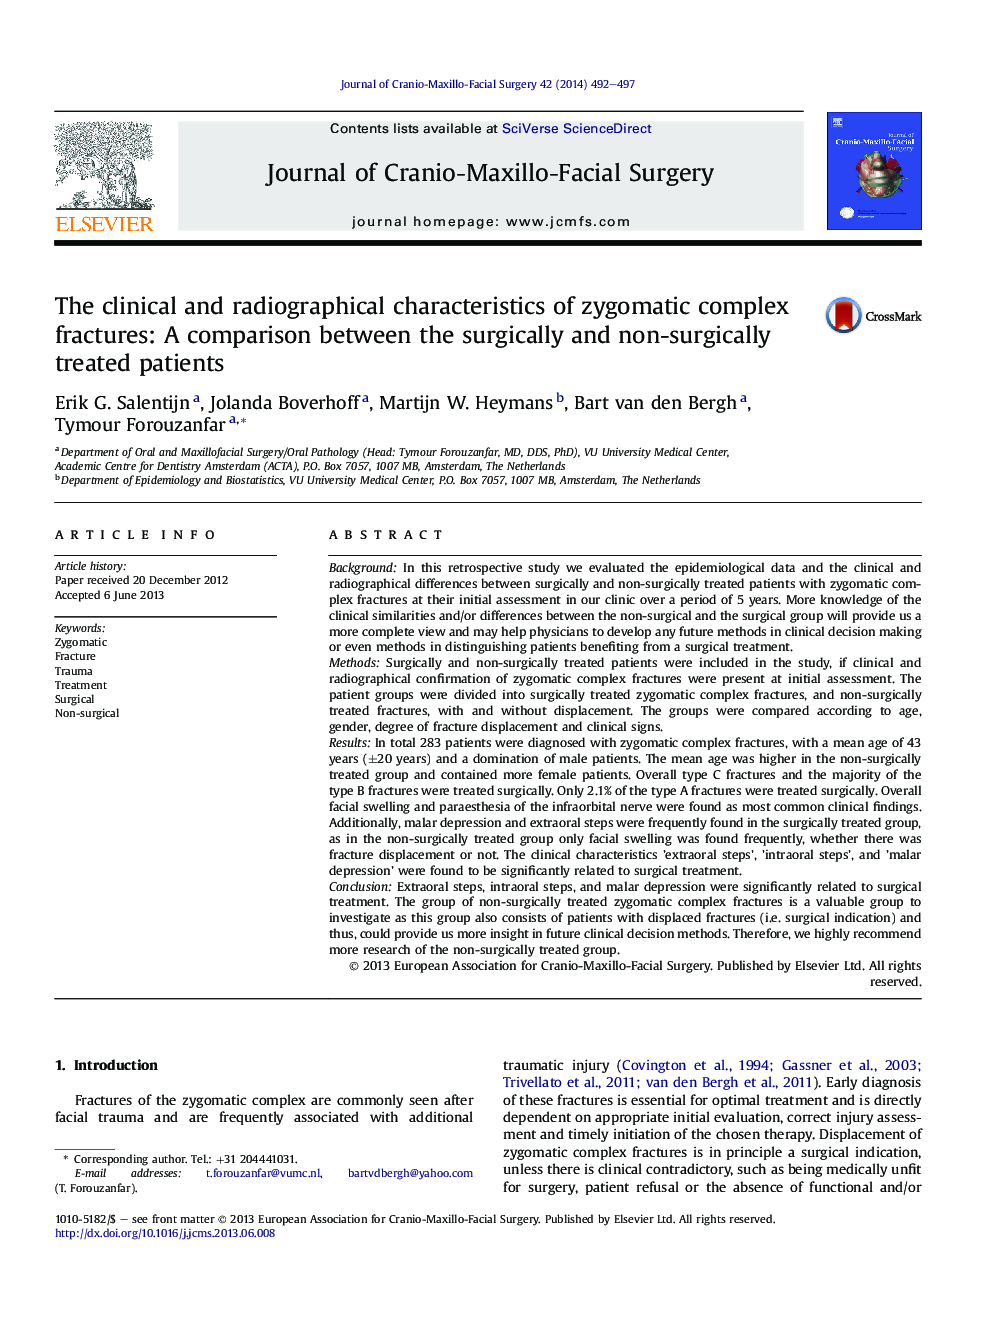 خصوصیات بالینی و رادیوگرافی شکستگیهای پیچیده پیچیده: مقایسه بین بیماران جراحی و غیر جراحی 